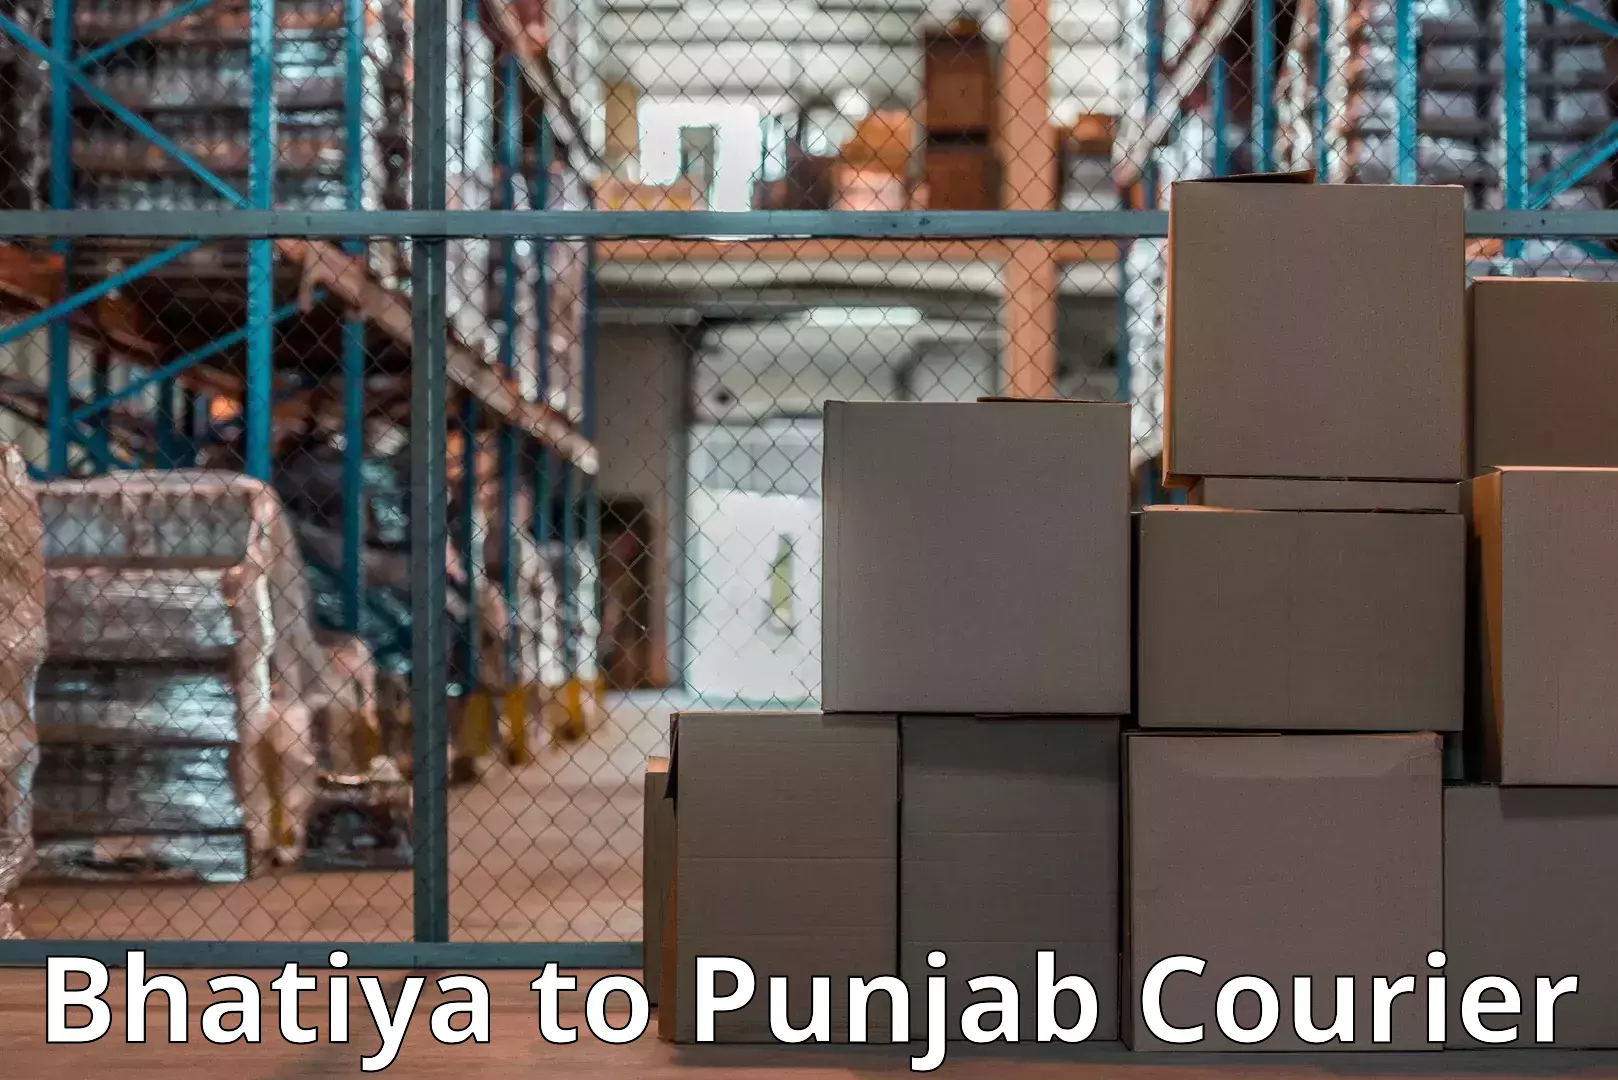 Home moving experts Bhatiya to Punjab